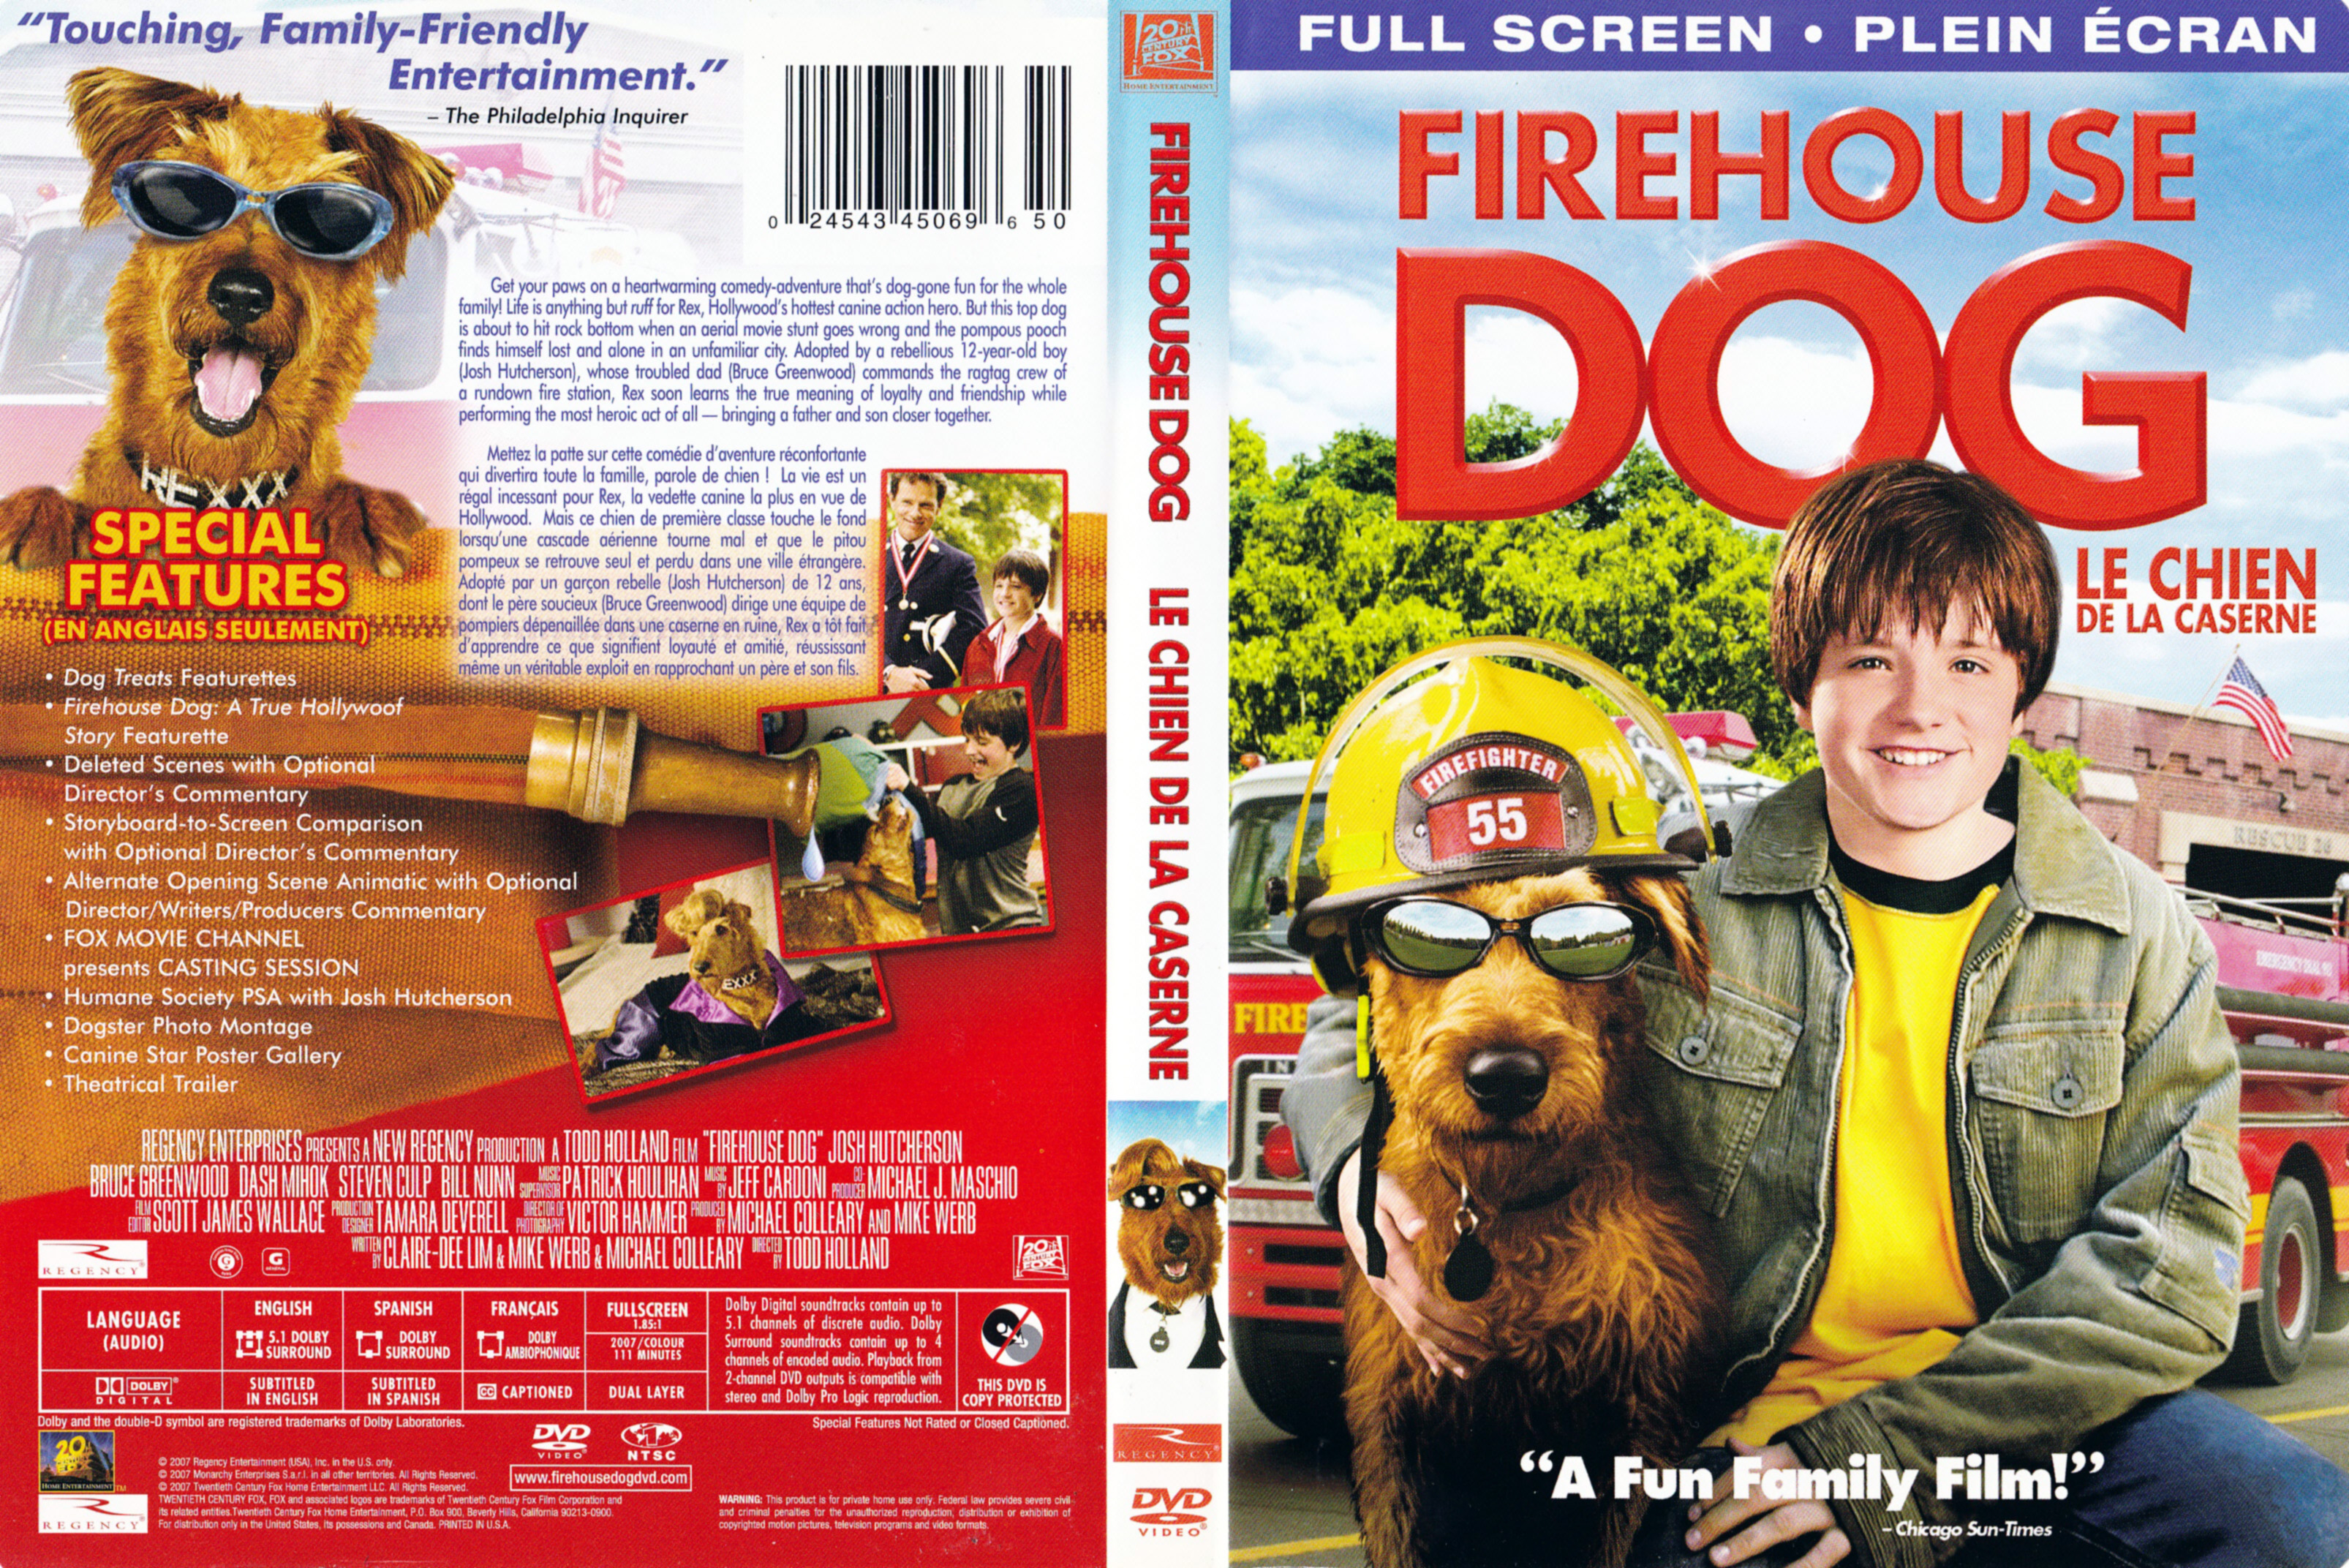 Jaquette DVD Firehouse dog - Le chien de la caserne (Canadienne)